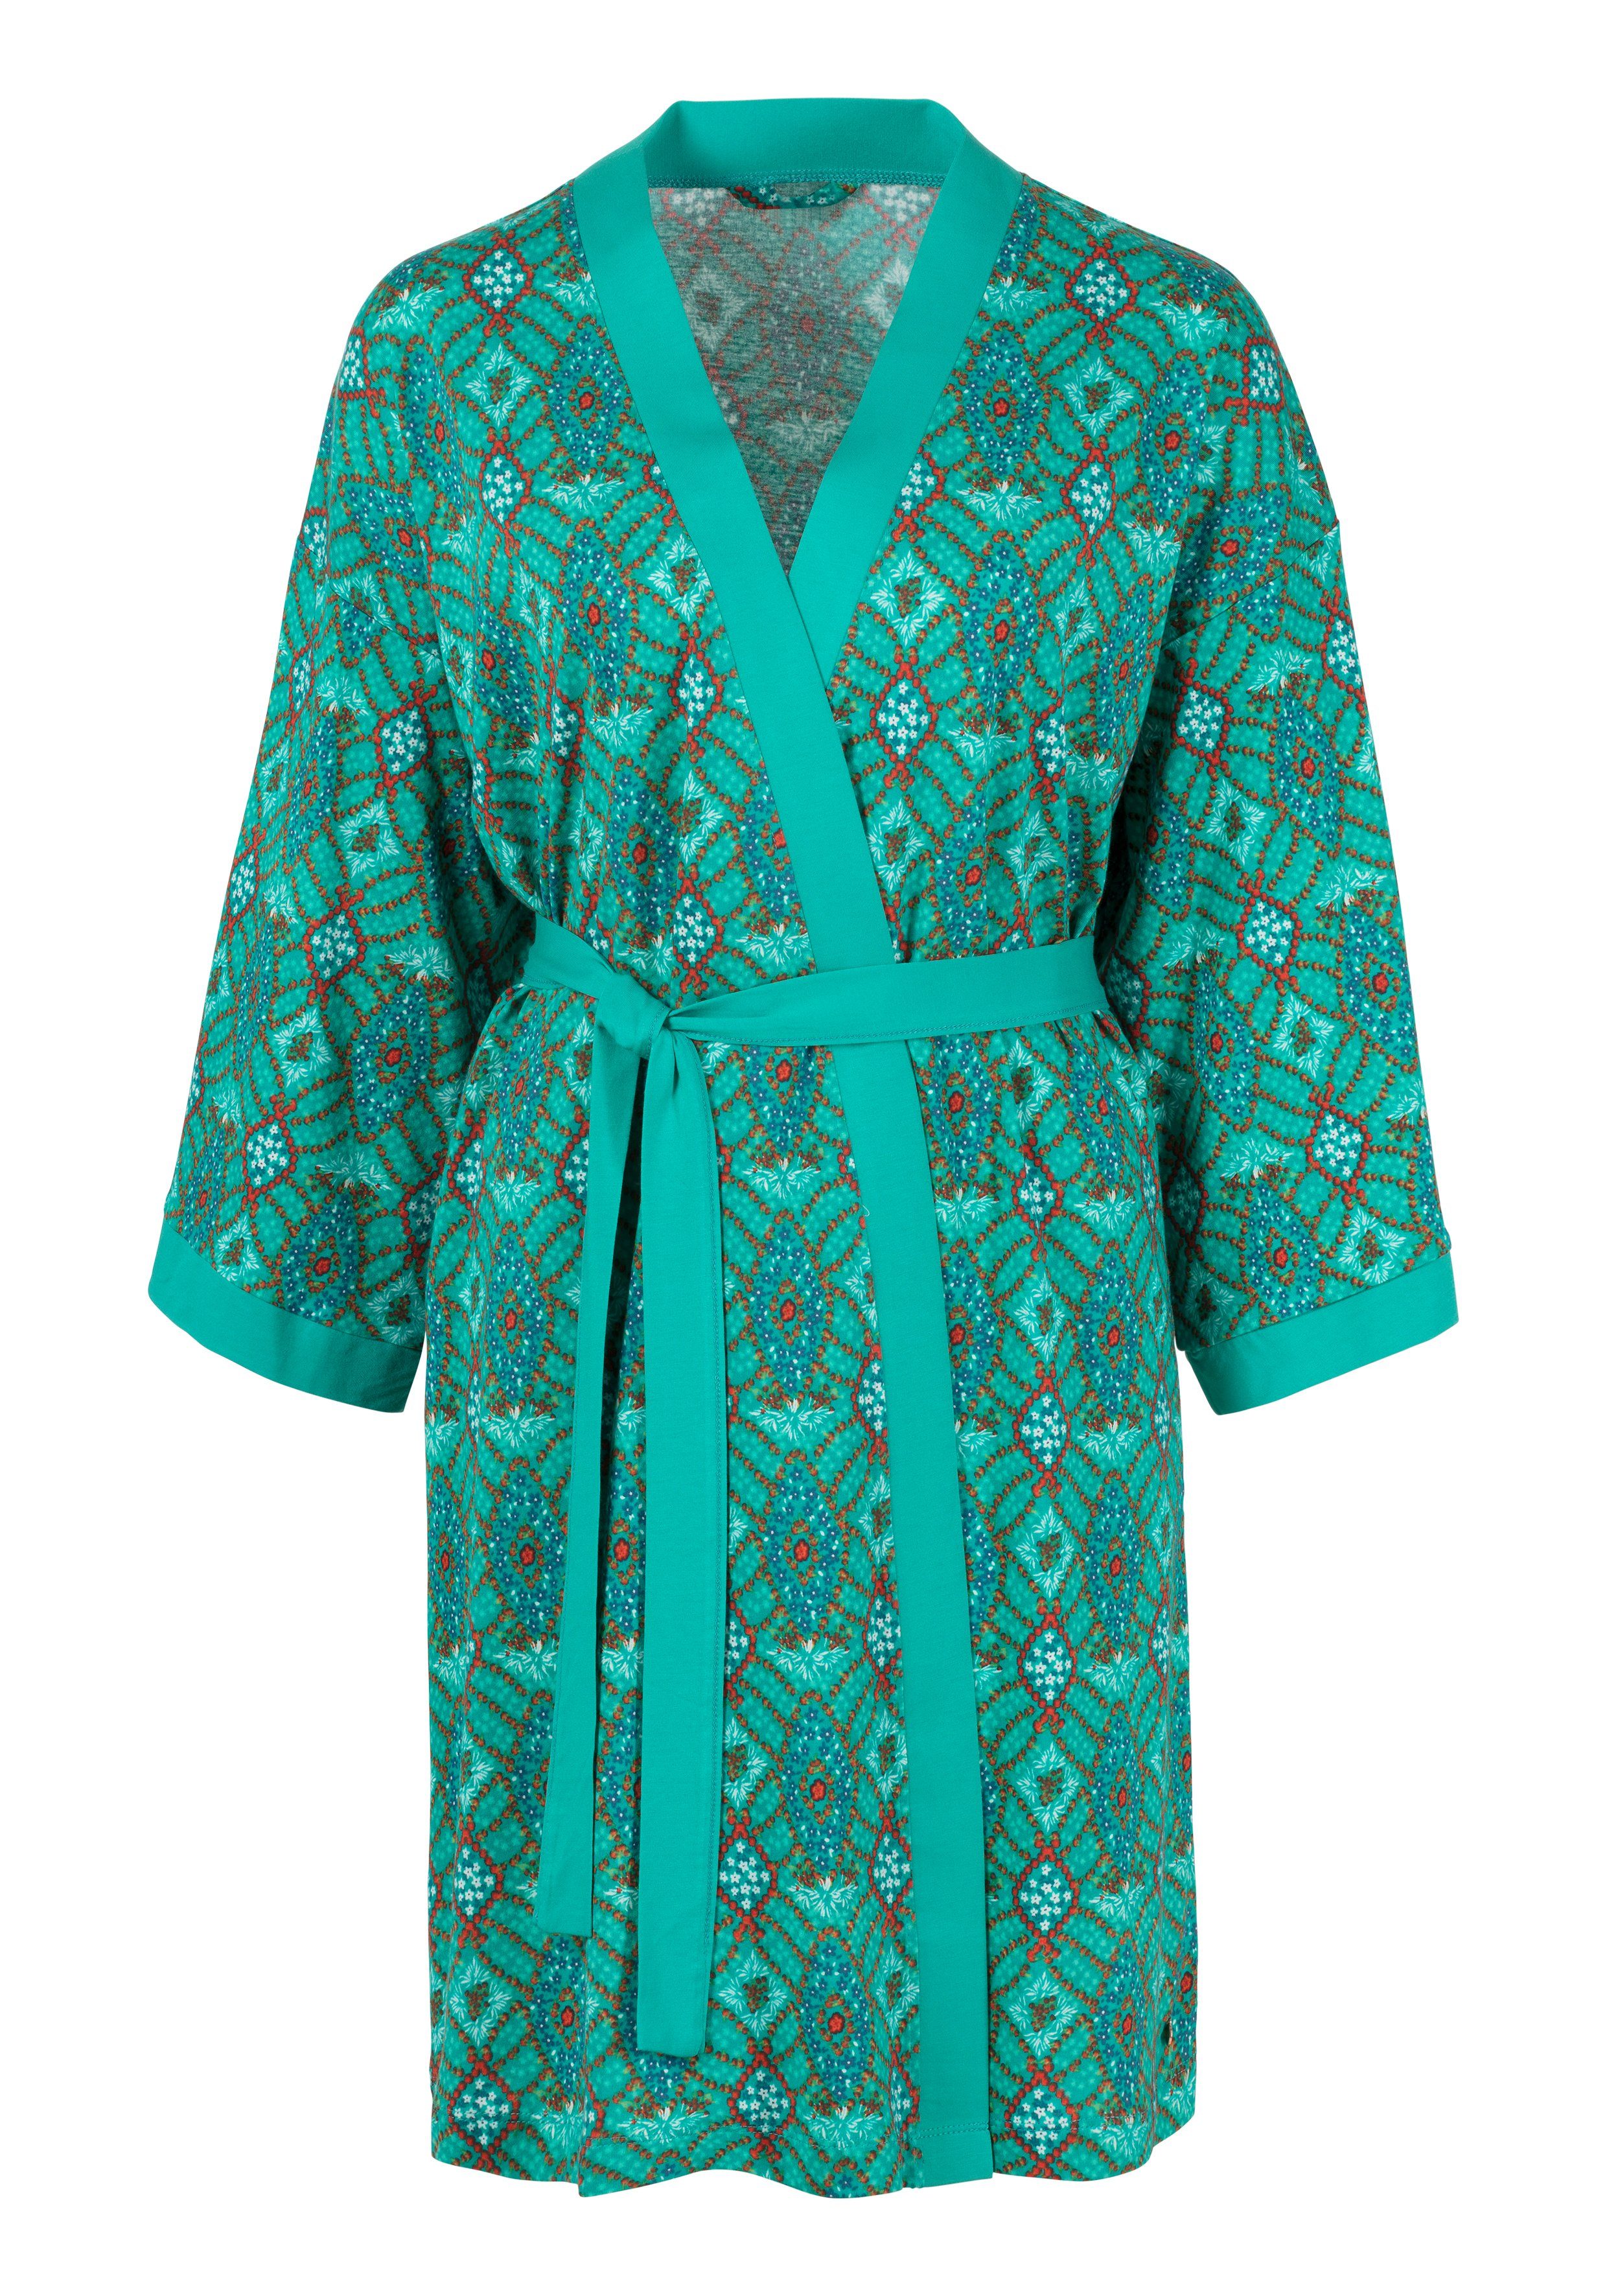 Kimono, Kurzform, zum s.Oliver Baumwoll-Mix, mit Ornamentdruck Binden Gürtel,